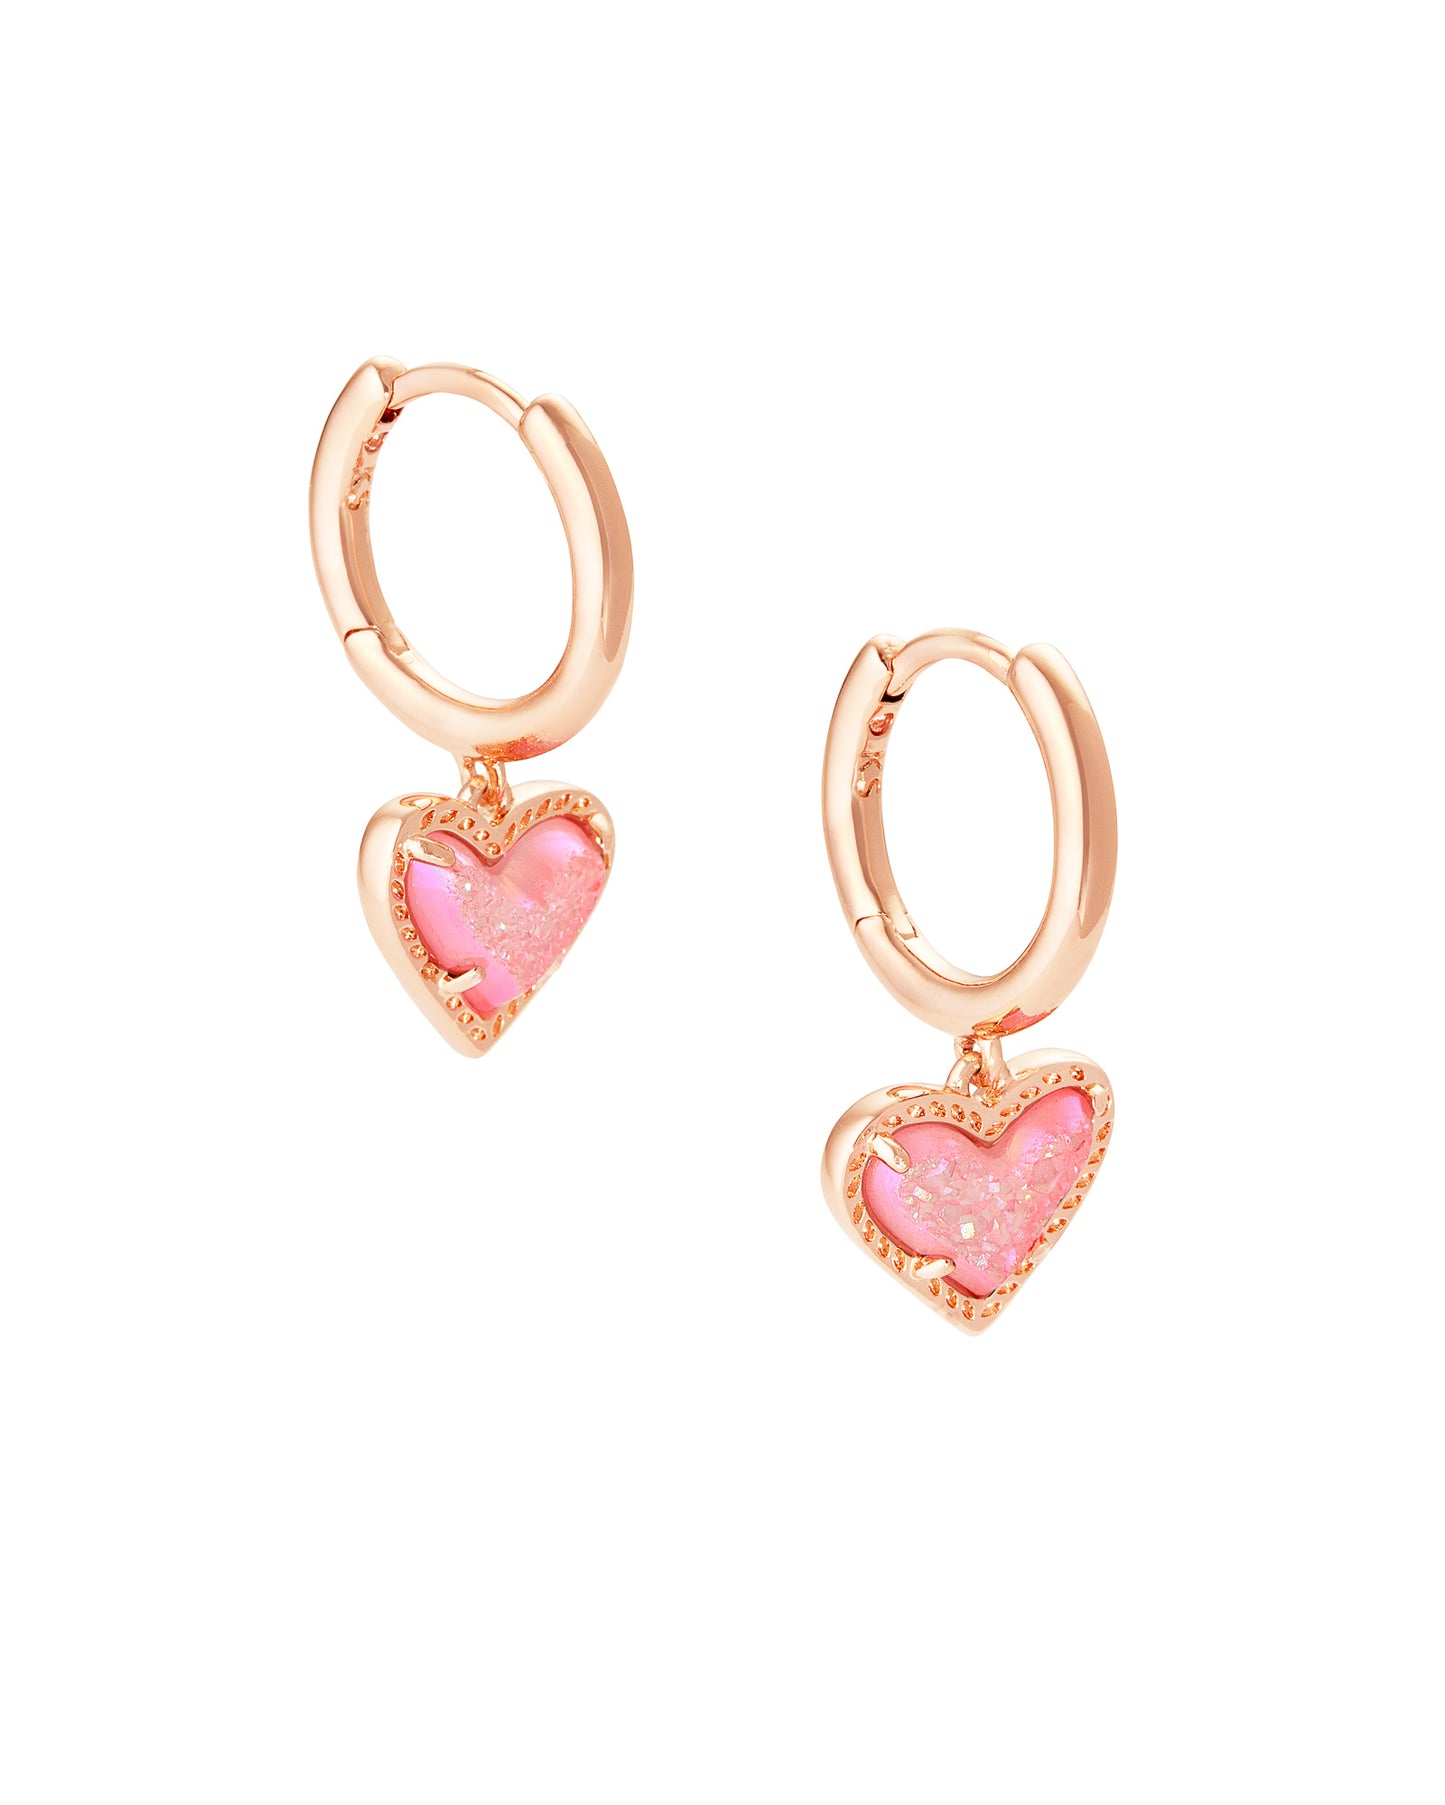 Ari Heart Rose Gold Huggie Earrings In Pink Drusy